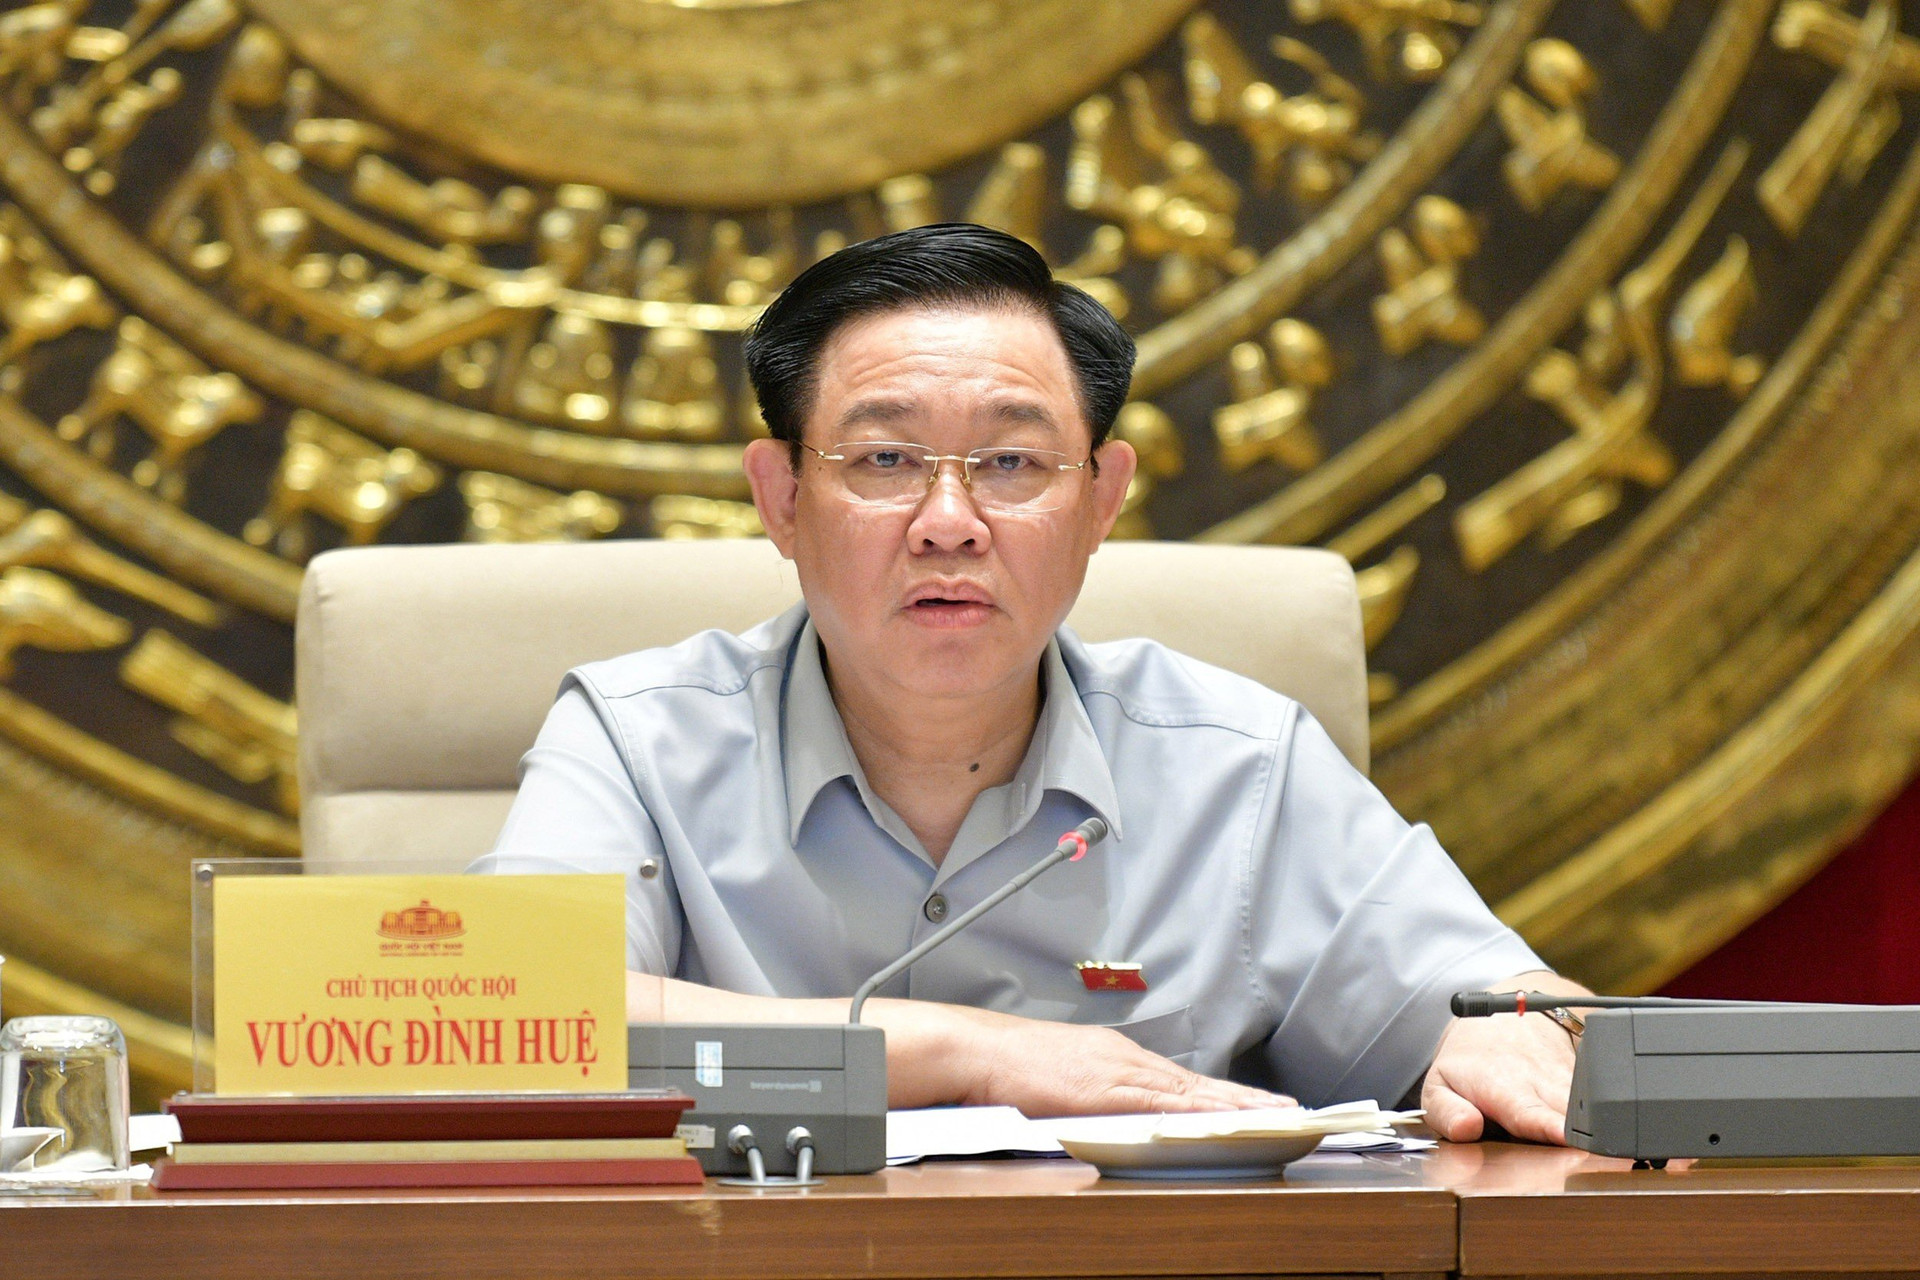 Chủ tịch Quốc hội Vương Đình Huệ phát biểu chỉ đạo - ảnh: T.Chi